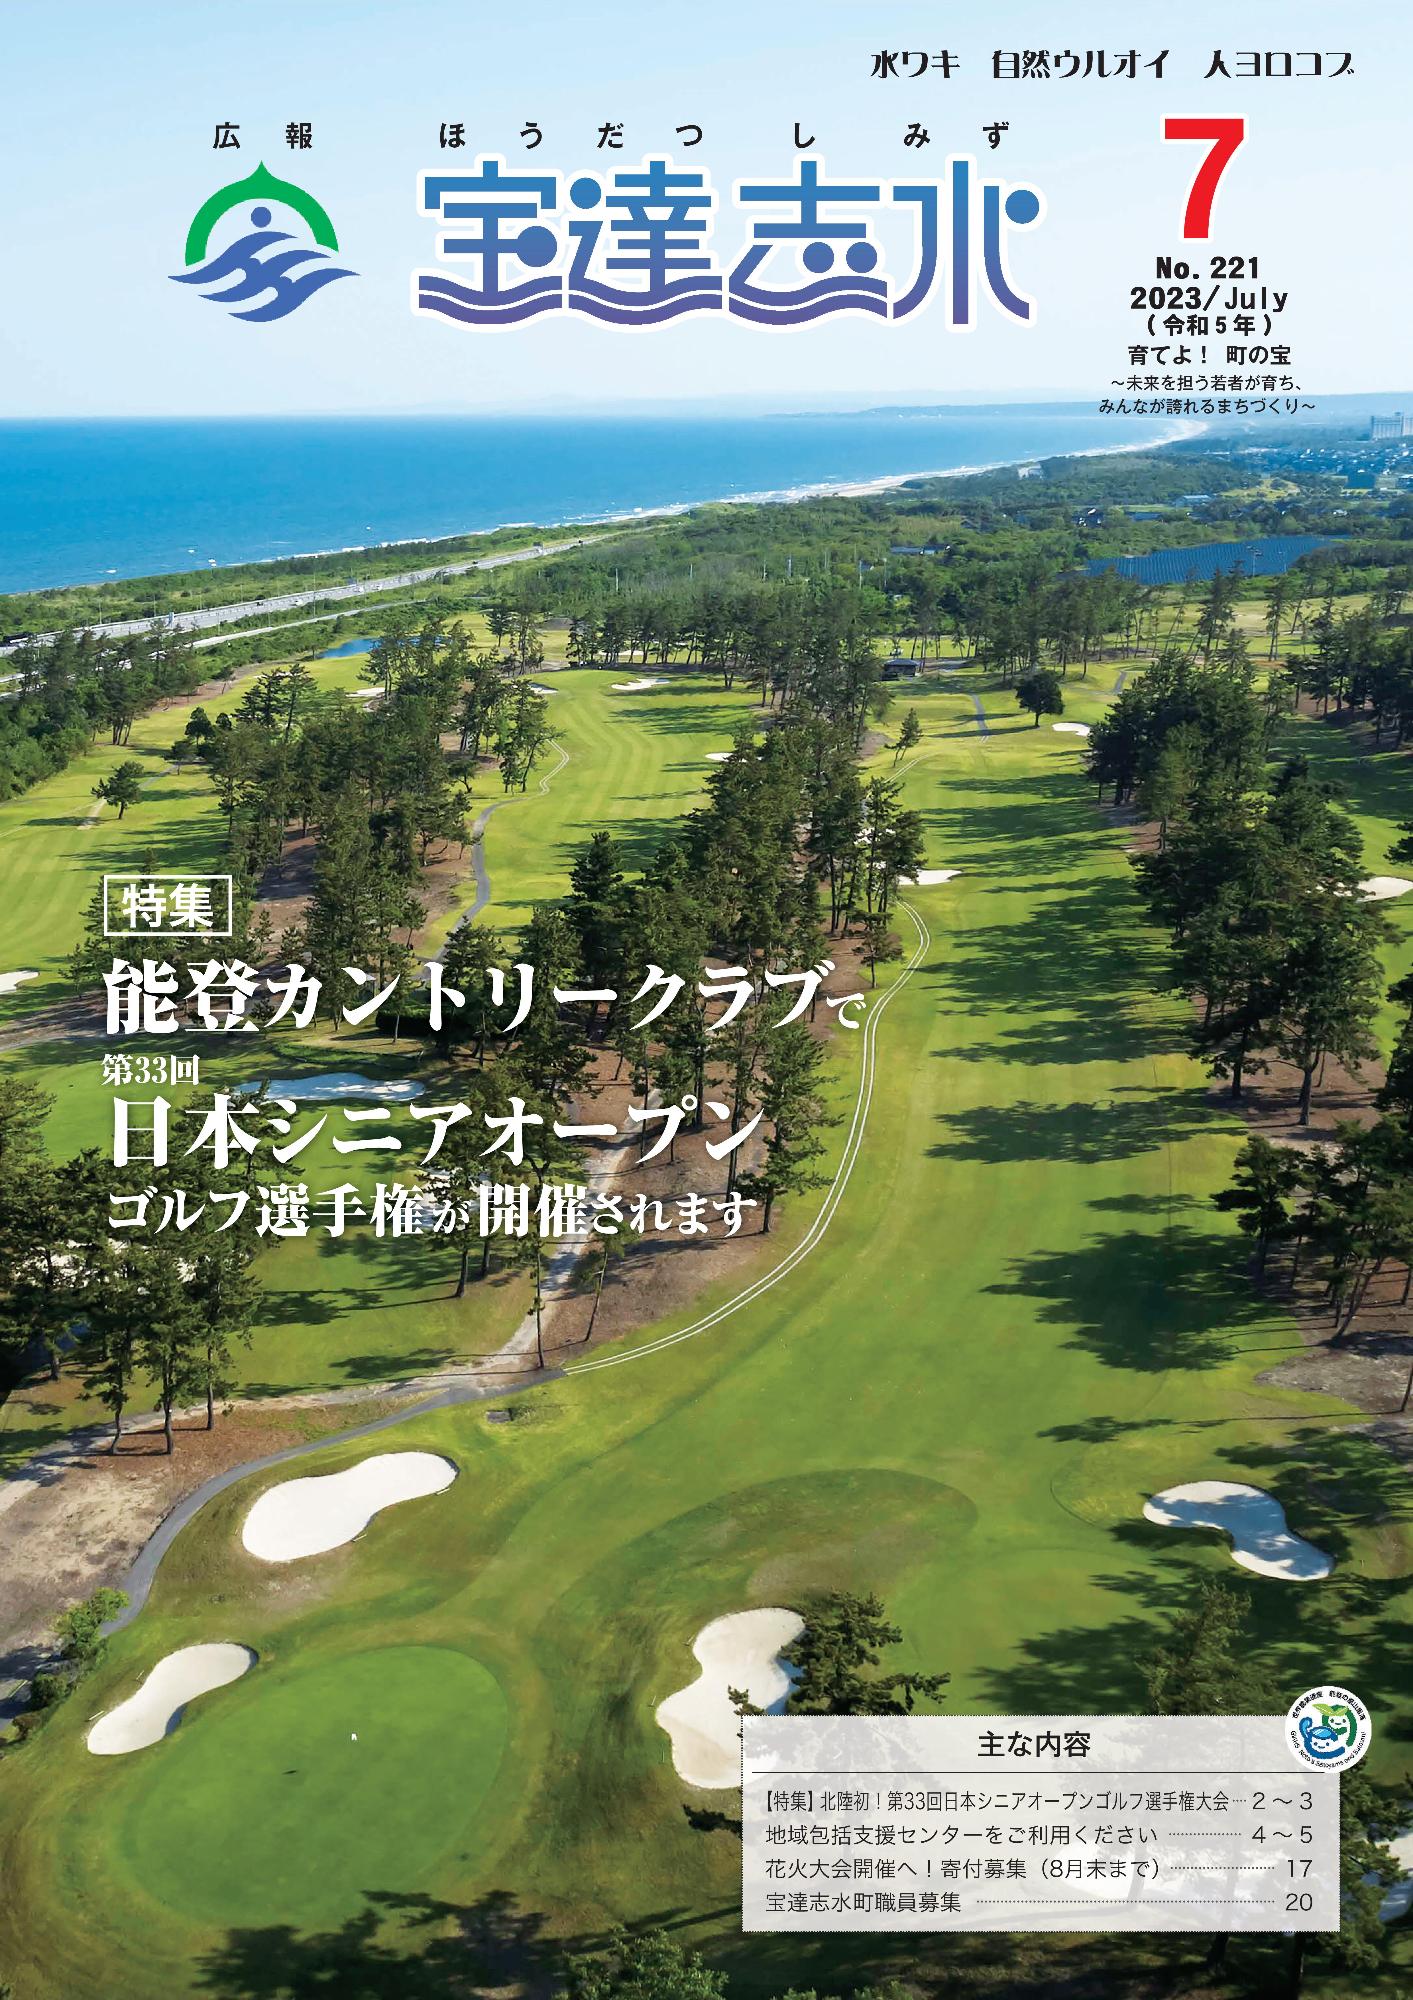 能登カントリークラブで第33回日本シニアオープンゴルフ選手権が開催されます